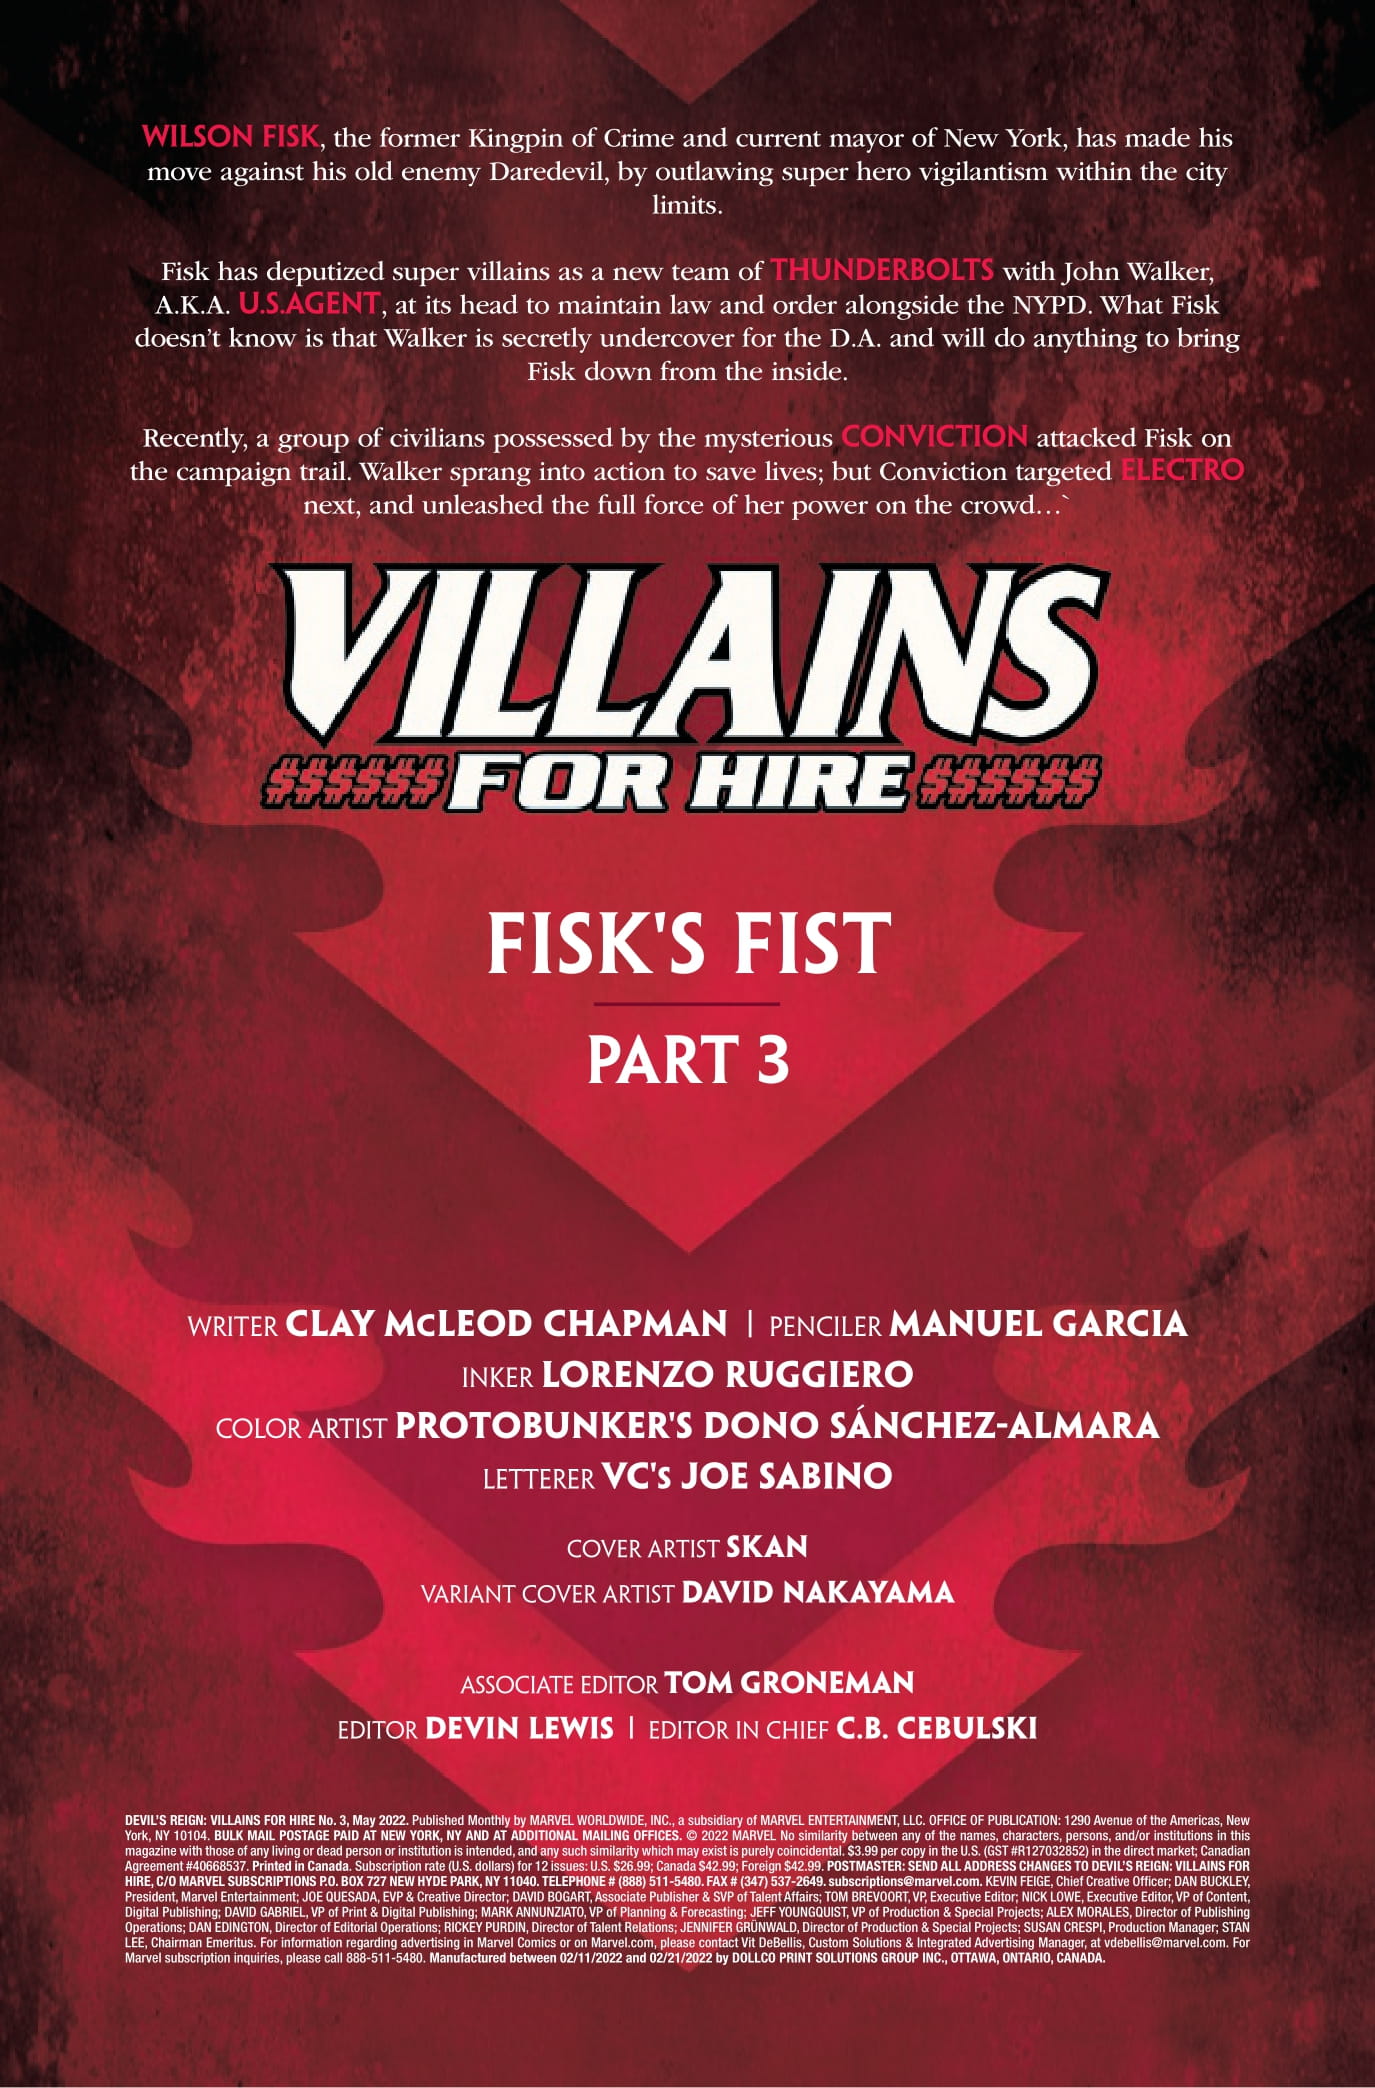 devils-reign-villains-for-hire-3-p1